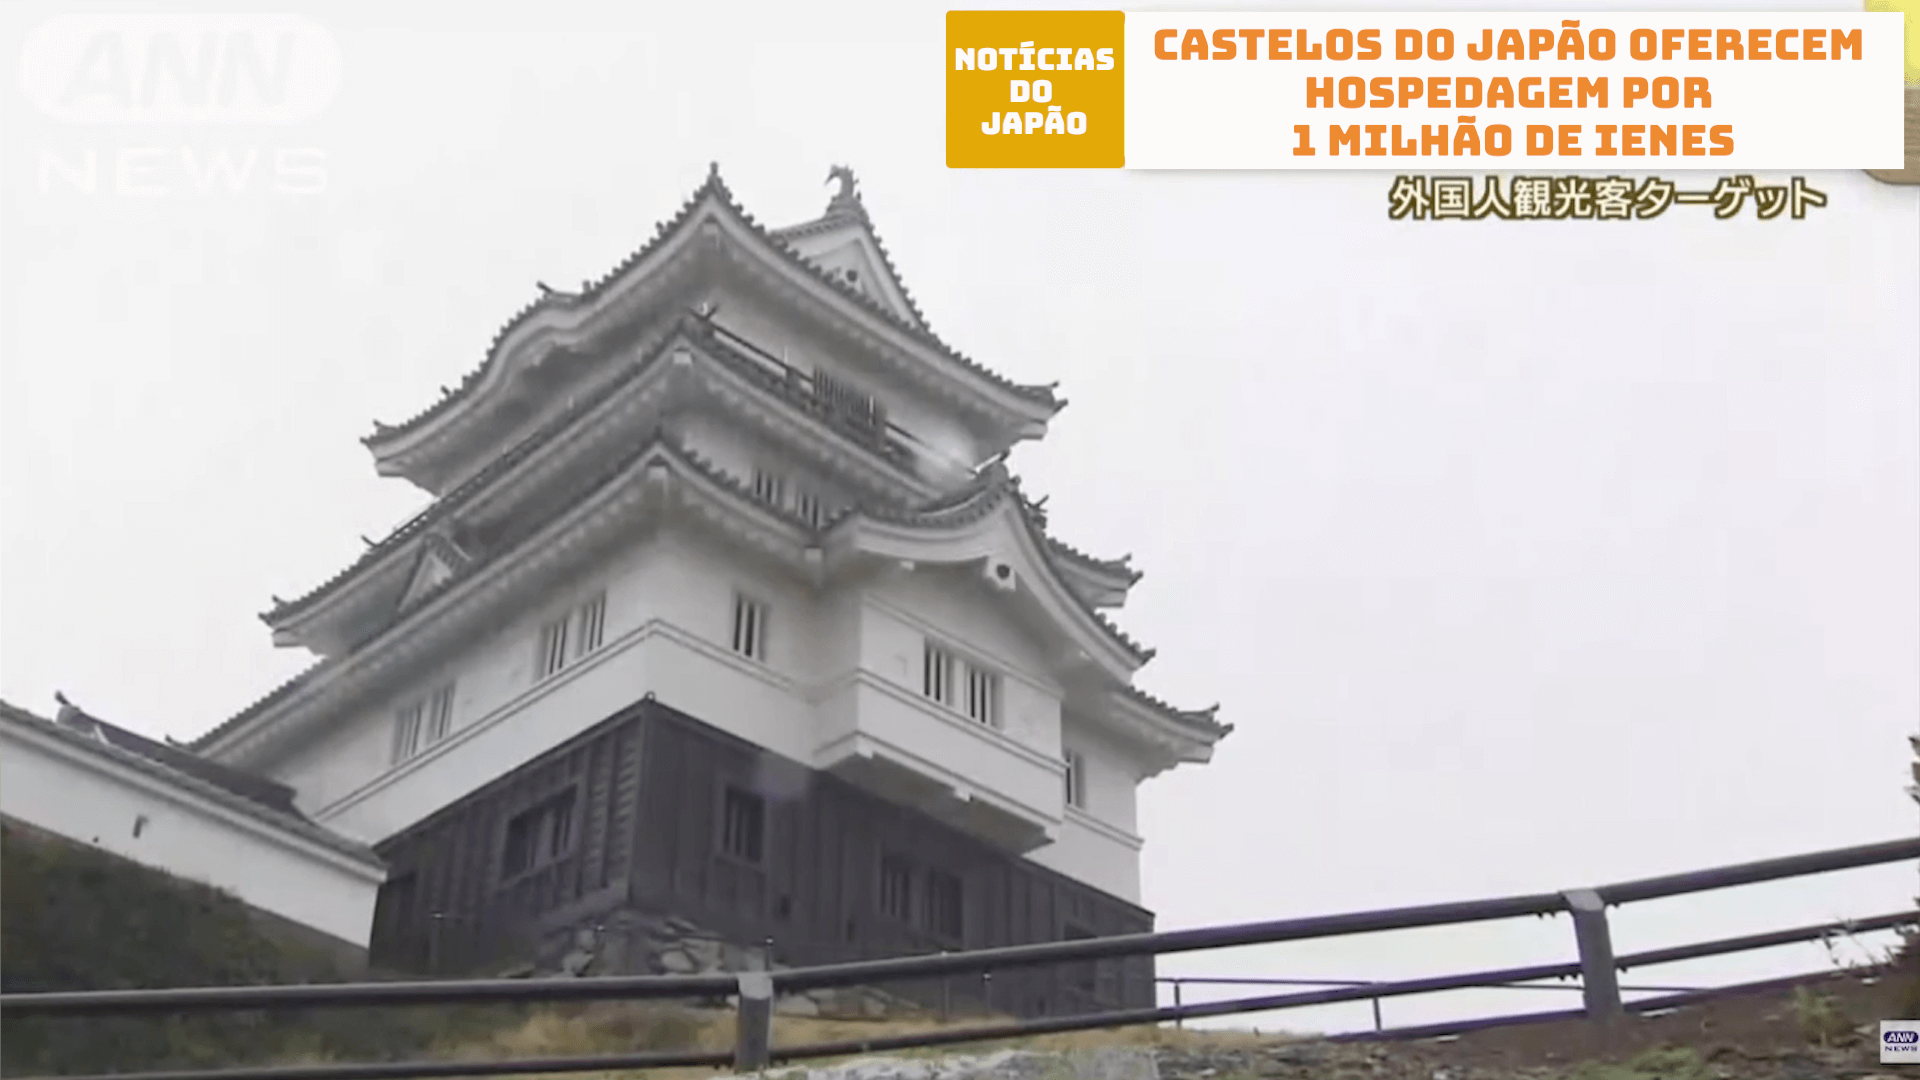 Castelos do Japão oferecem hospedagem por 1 milhão de ienes